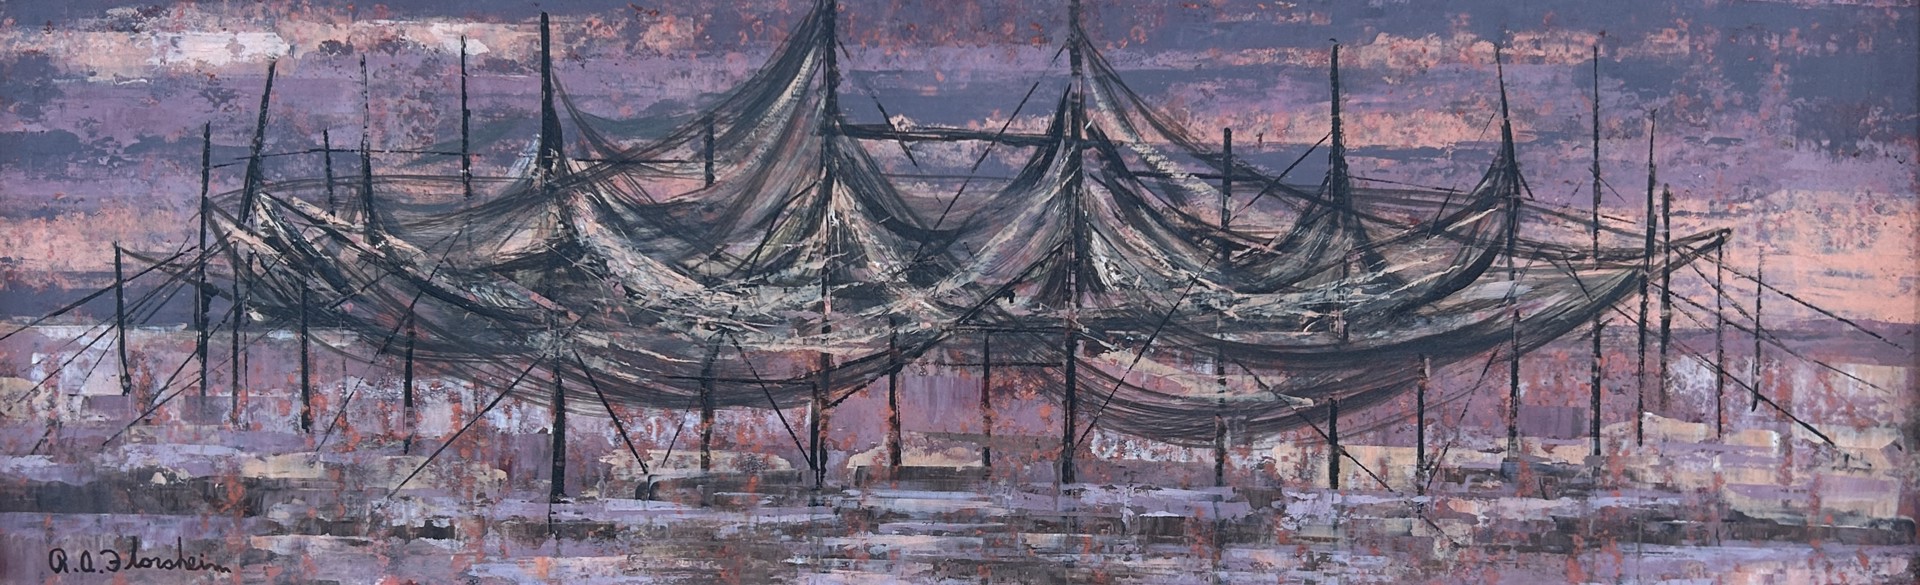 Nets Drying by Richard Florsheim